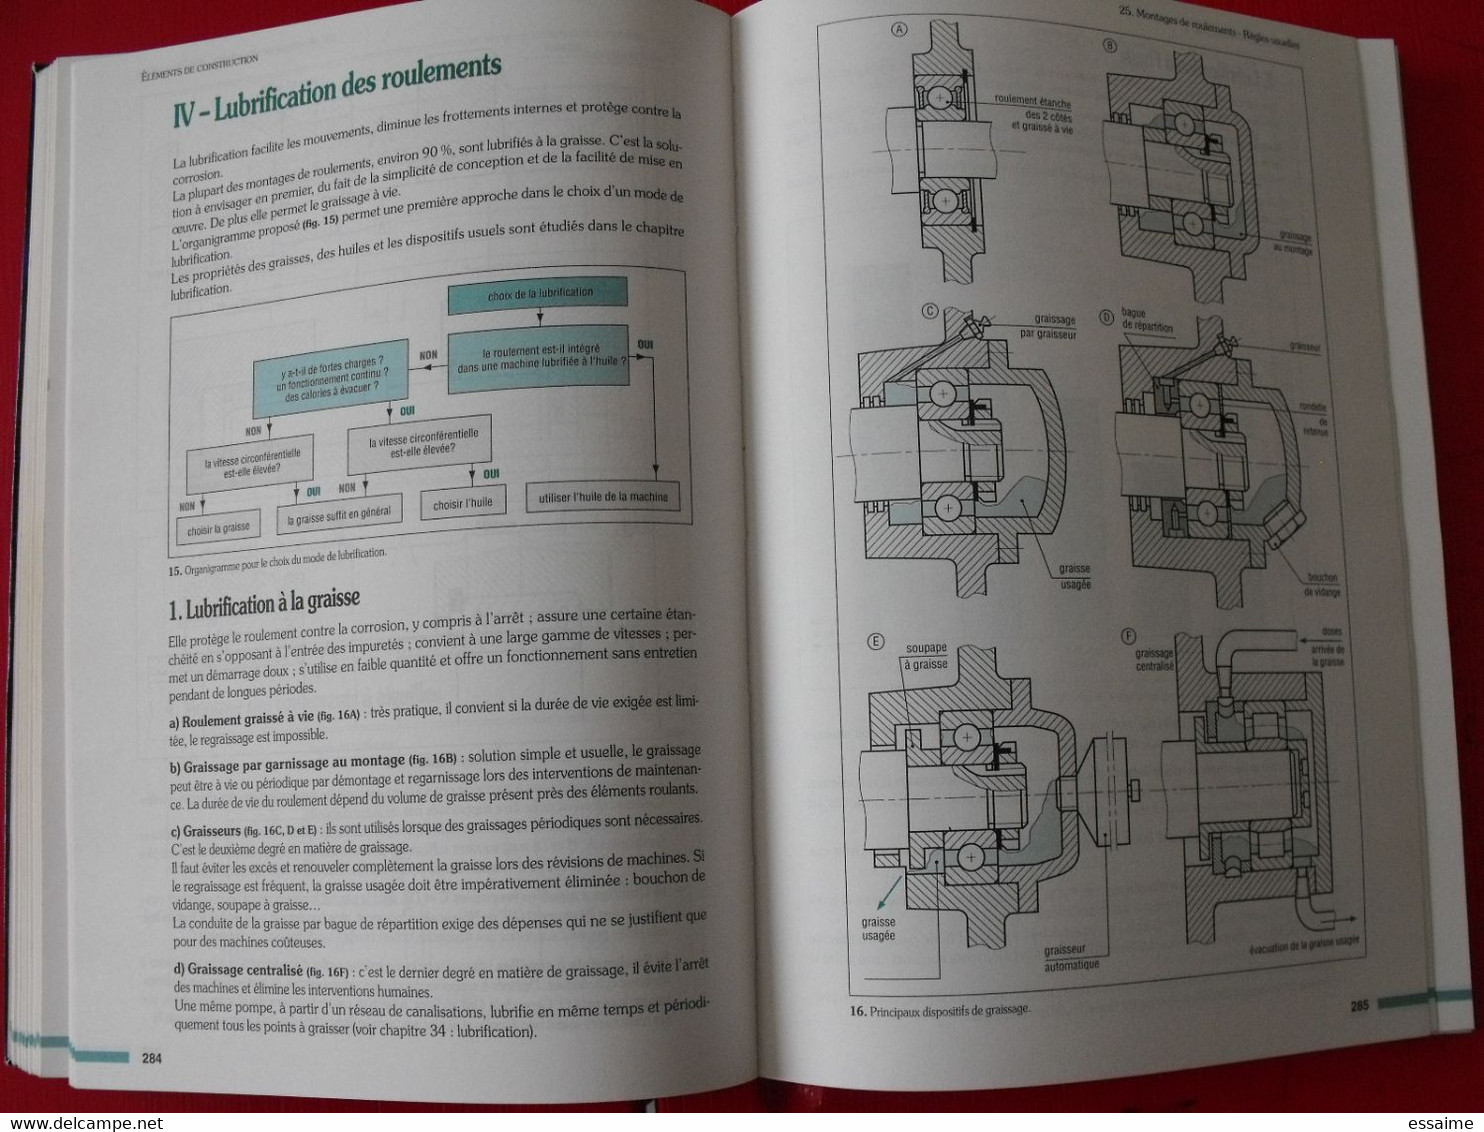 Guide Des Sciences Et Technologies Industrielles. Fanchon Afnor Nathan. 1994. Construction Mécanique Dessin Automatisme - 18+ Years Old